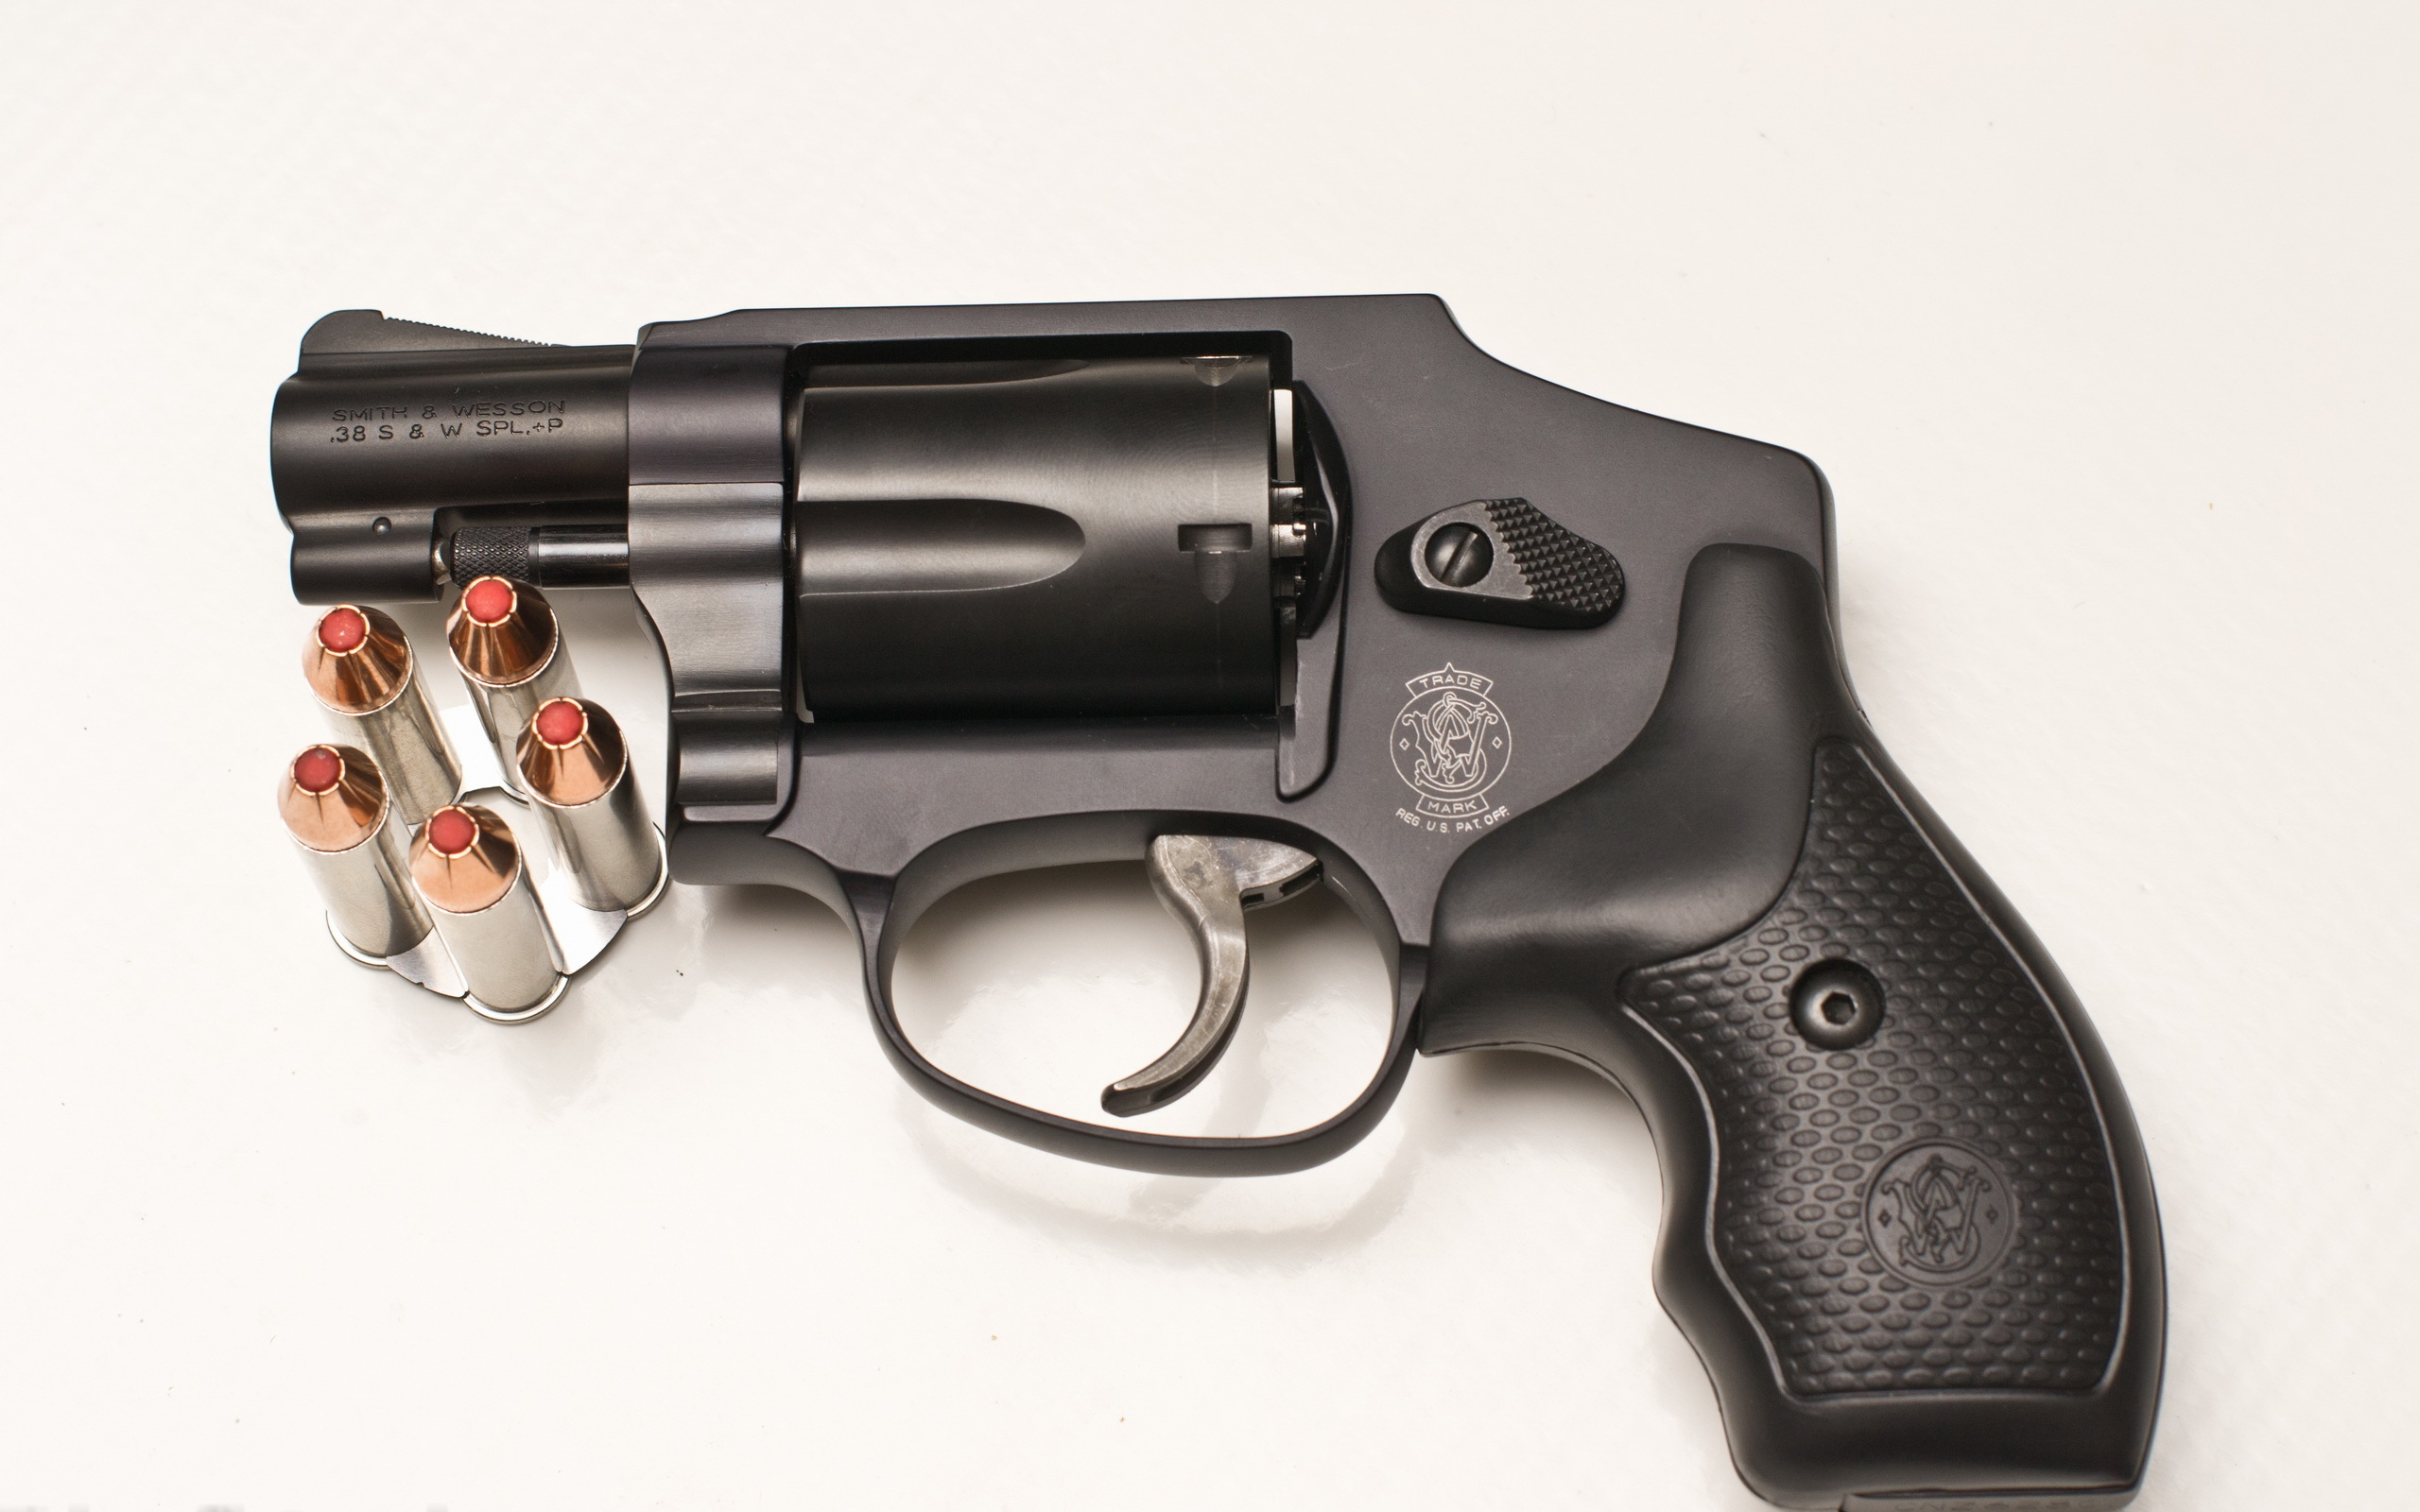 Скачать обои Специальный Револьвер Smith & Wesson 38 на телефон бесплатно